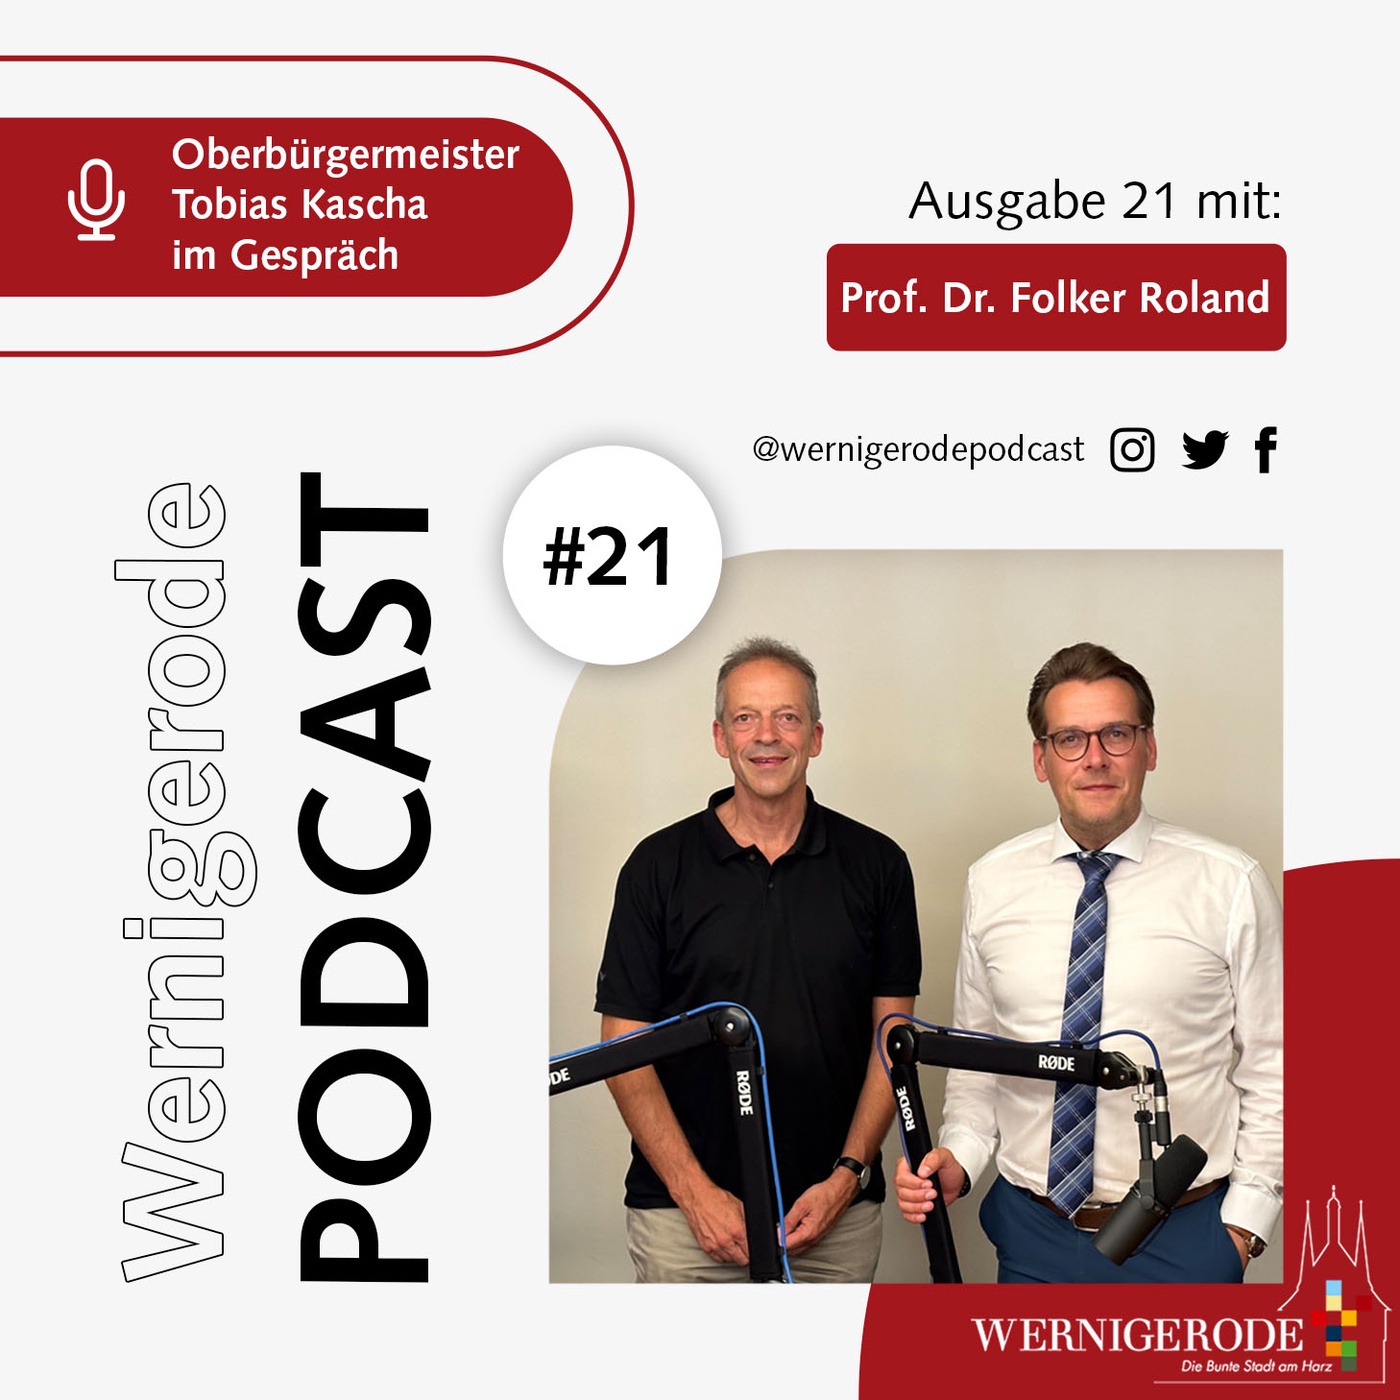 Wernigerode Podcast #21 - Oberbürgermeister Tobias Kascha im Gespräch mit Prof. Dr. Folker Roland.